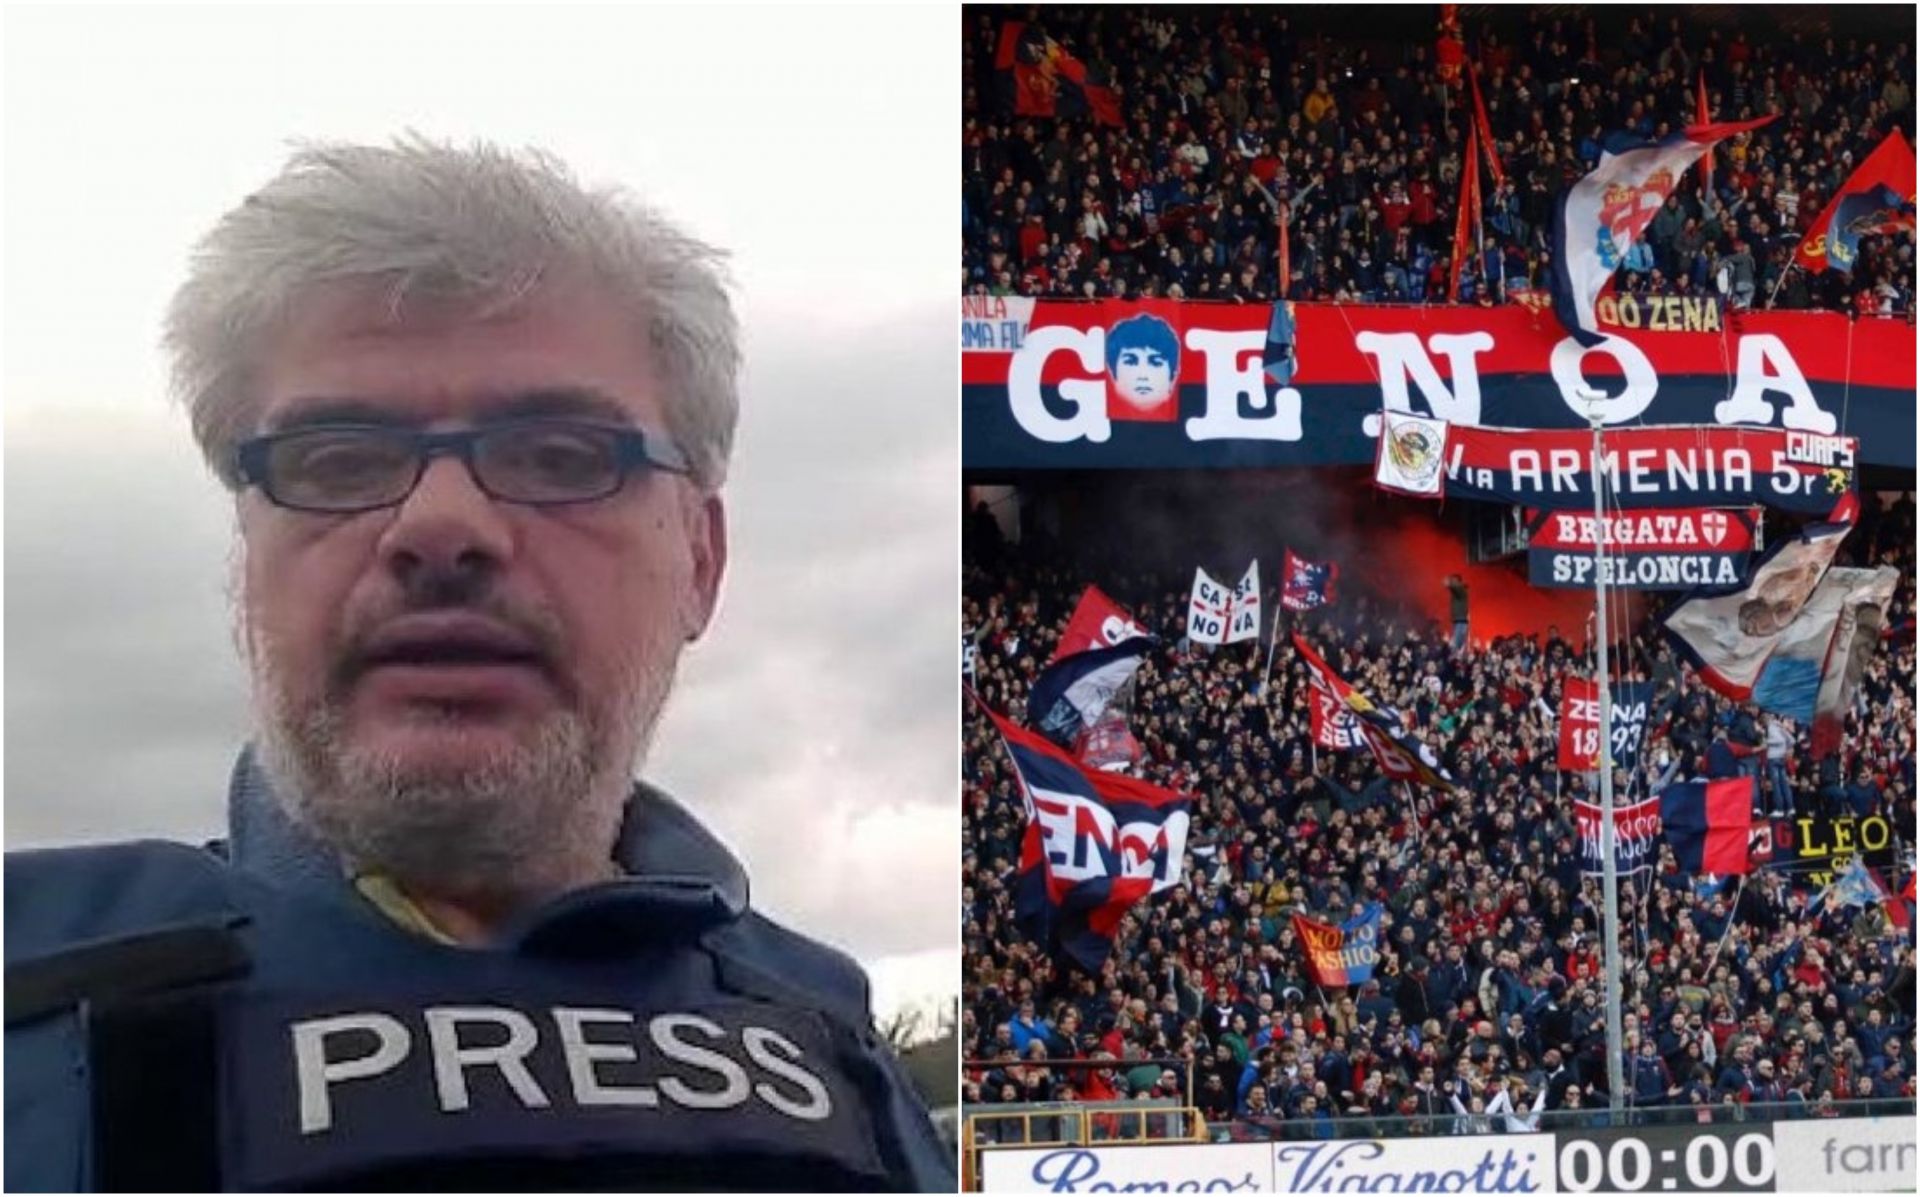 Genoa-Ascoli, invitato al Ferraris il giornalista genovese Corrado Zunino, l’inviato di Repubblica ferito in Ucraina